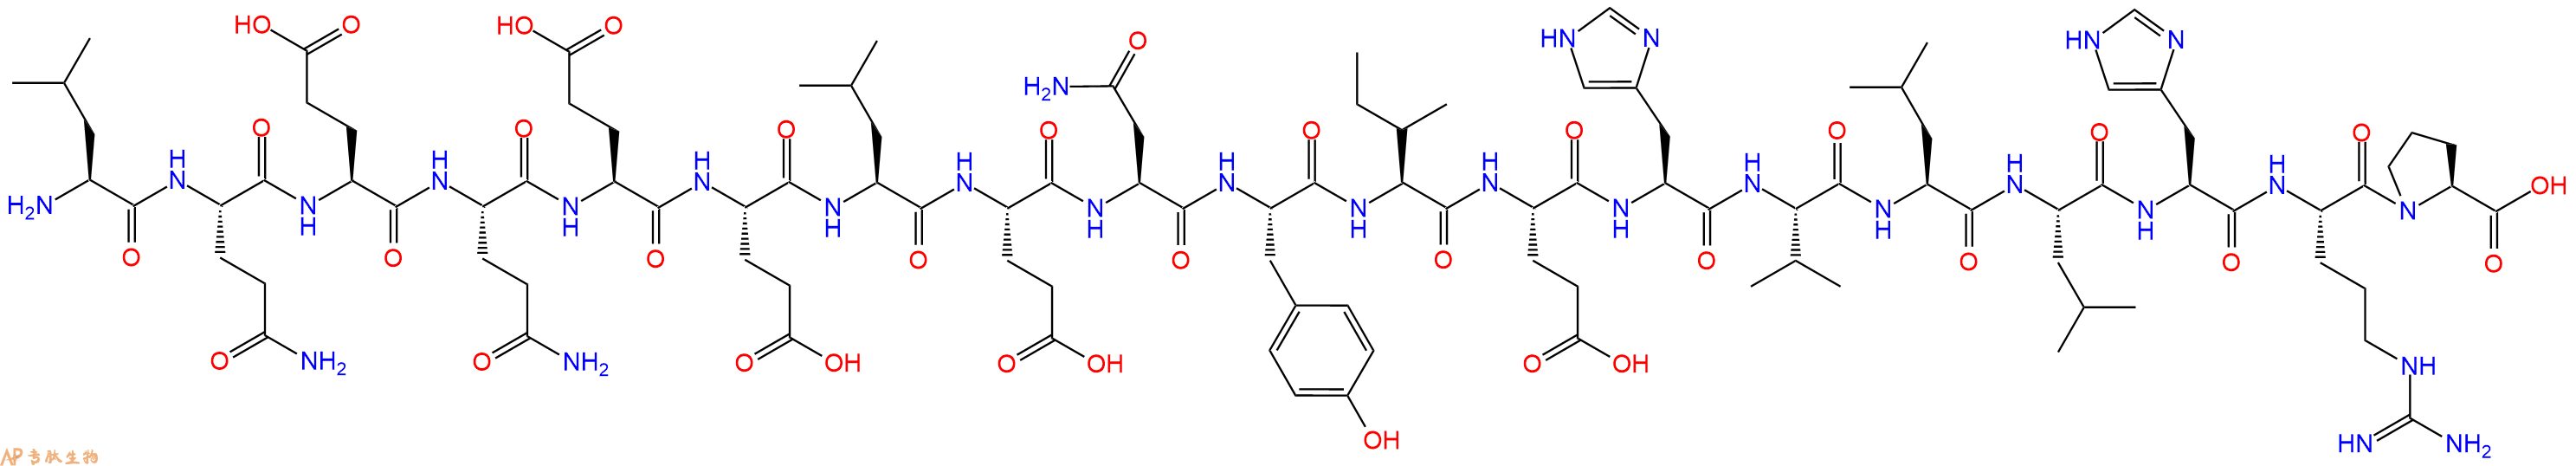 专肽生物产品LQEQ-19 (mouse, rat)322644-72-4